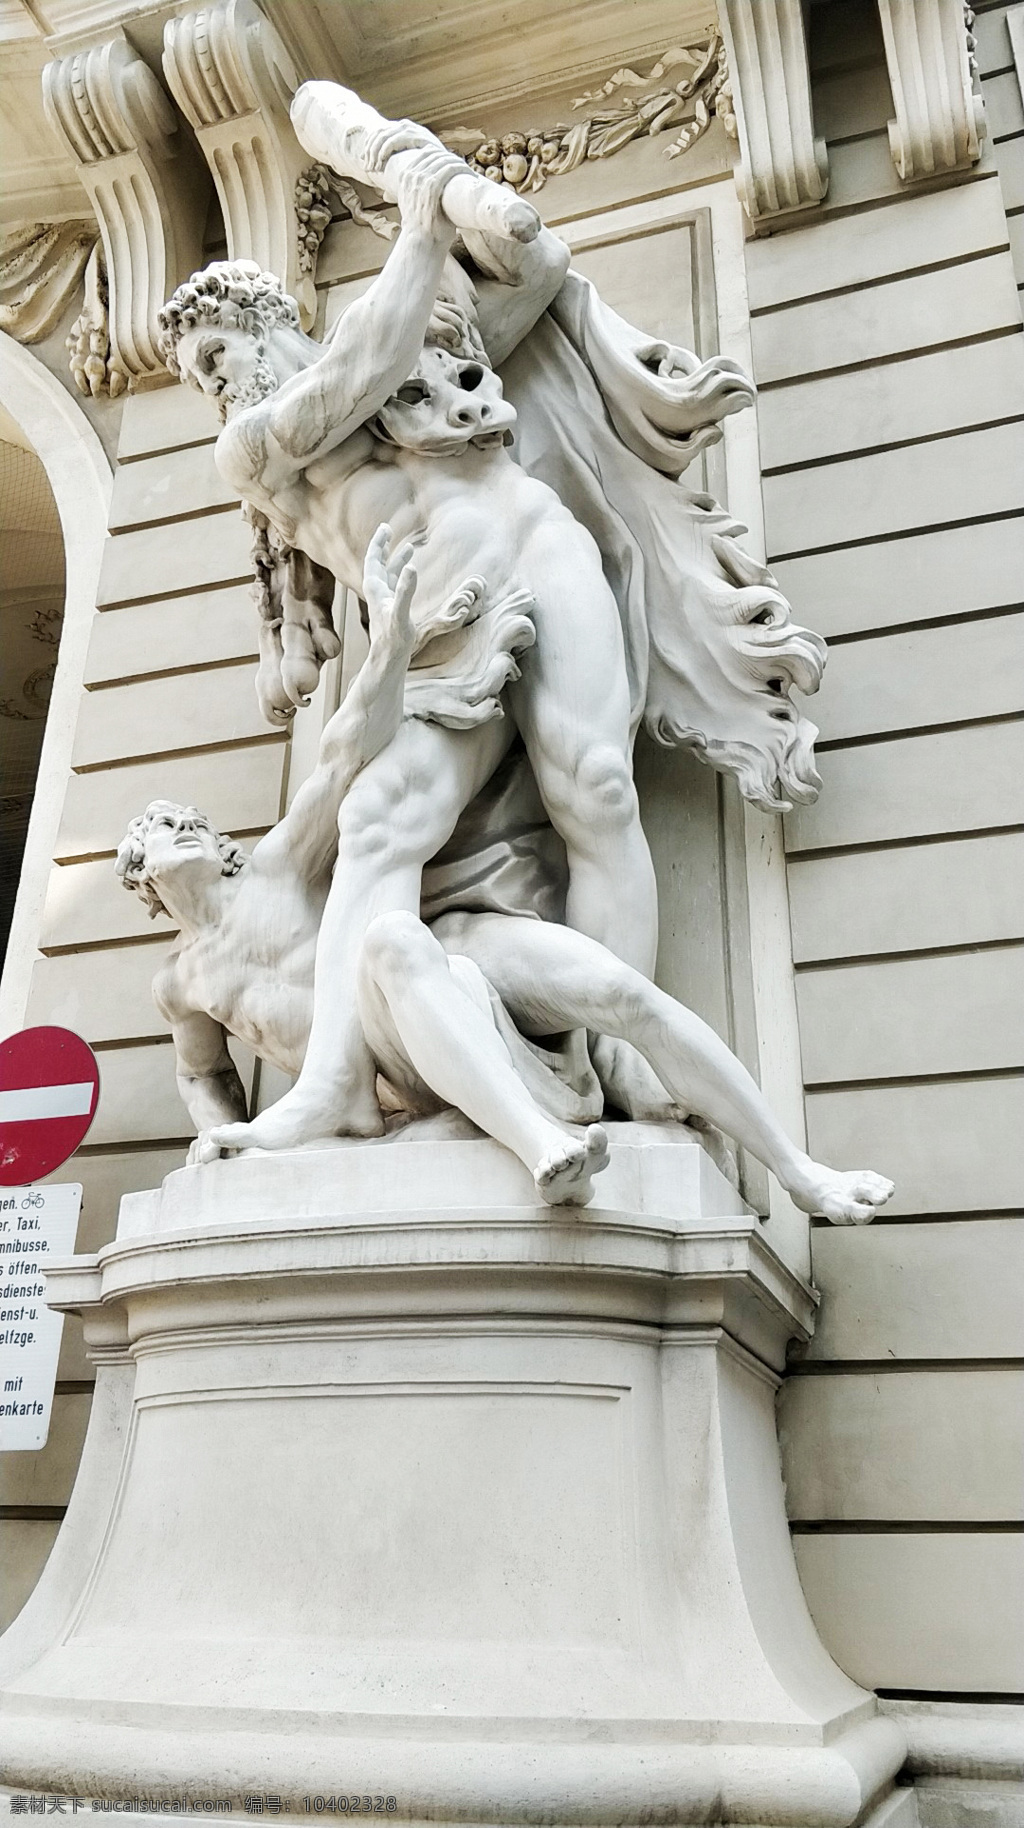 雕像 石膏 人体 文艺复兴 大卫 古典 艺术 展厅 意大利 米兰 旅游摄影 国外旅游